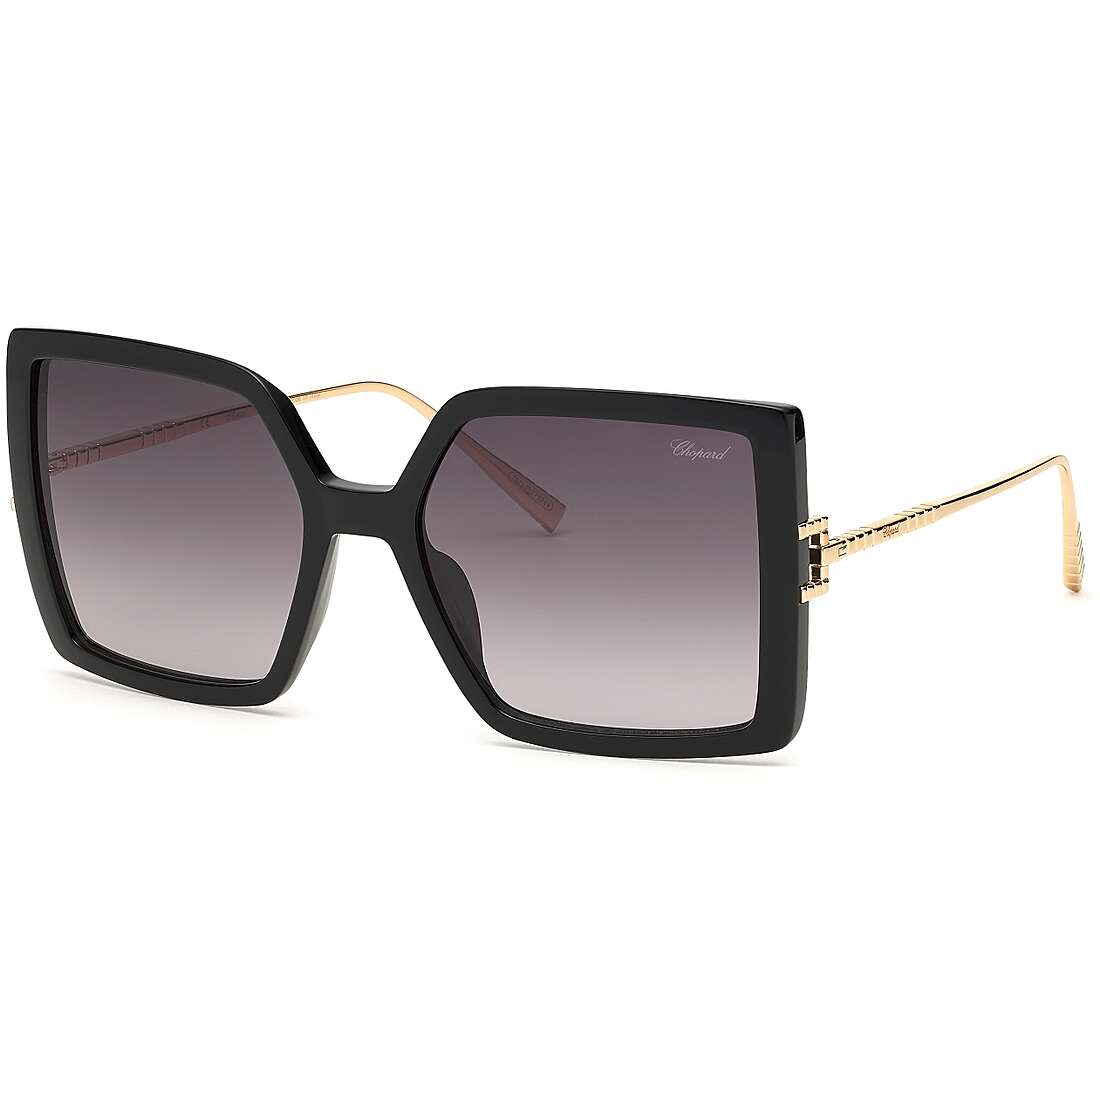 occhiali da sole Chopard neri forma Quadrata SCH334M0BLK